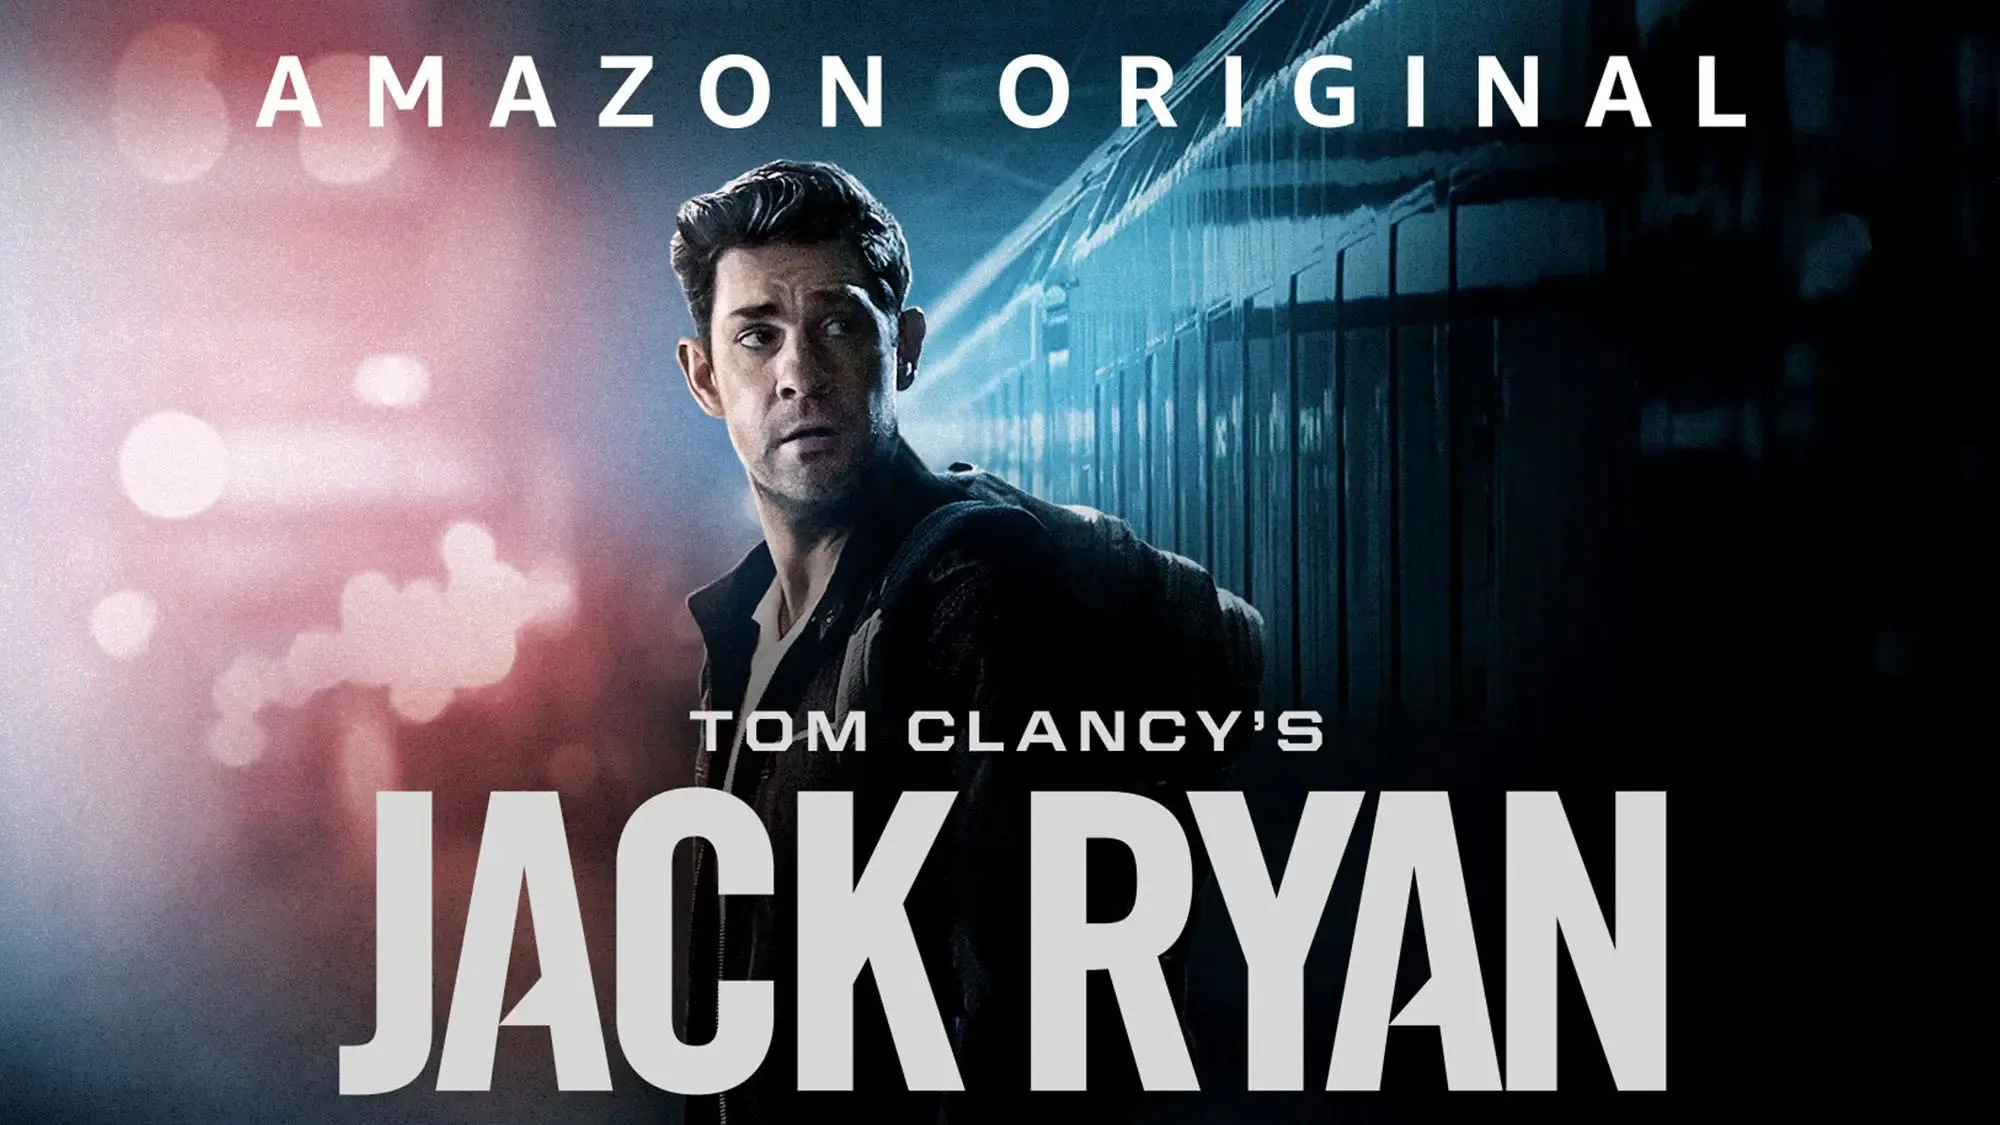 Jack Ryan Season 4 Episode 4 Release Date